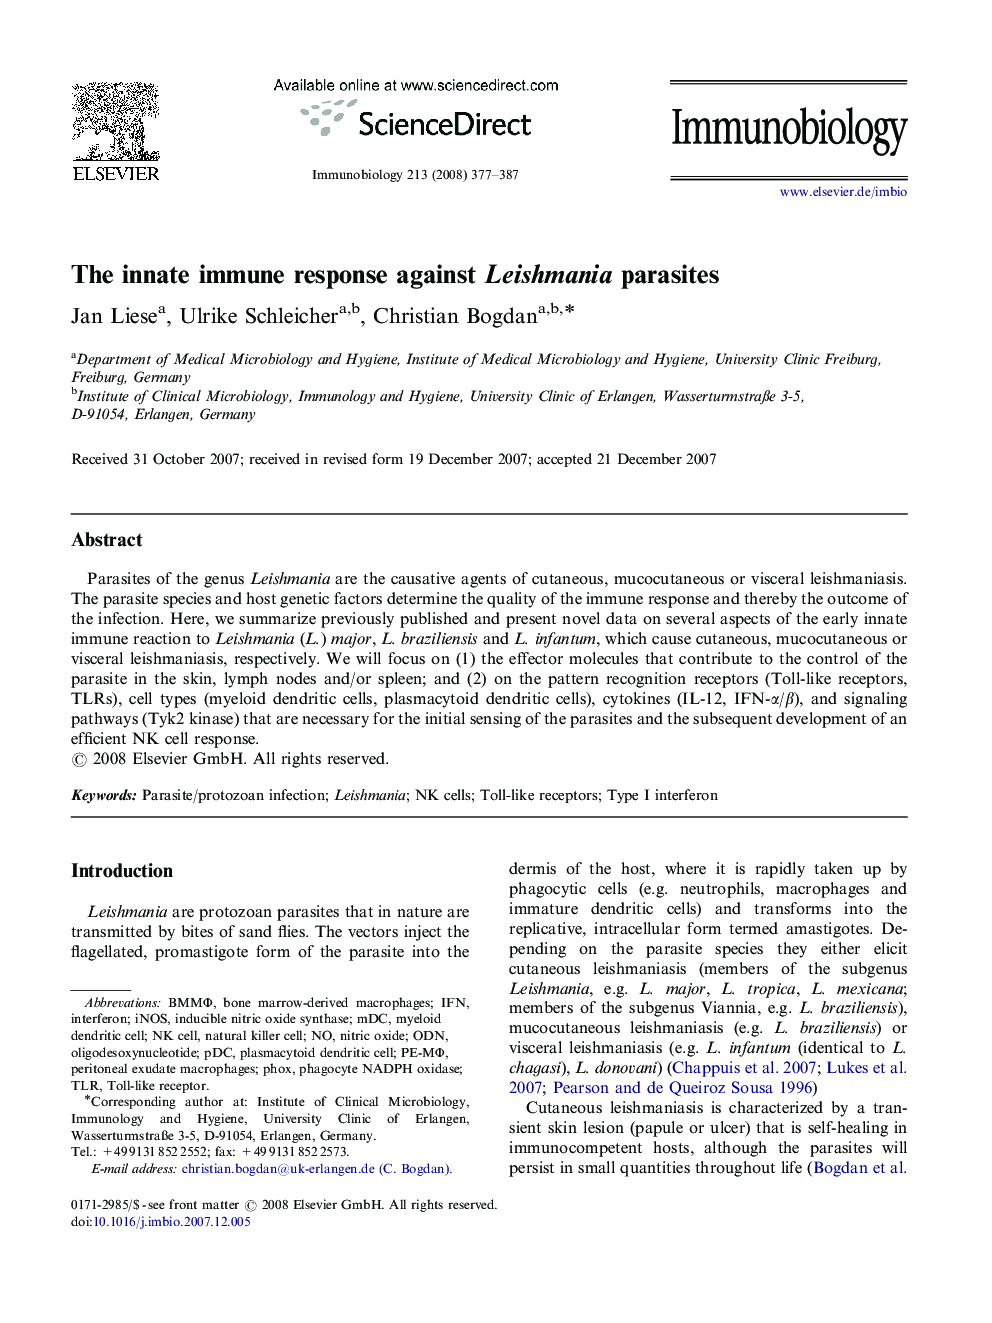 The innate immune response against Leishmania parasites